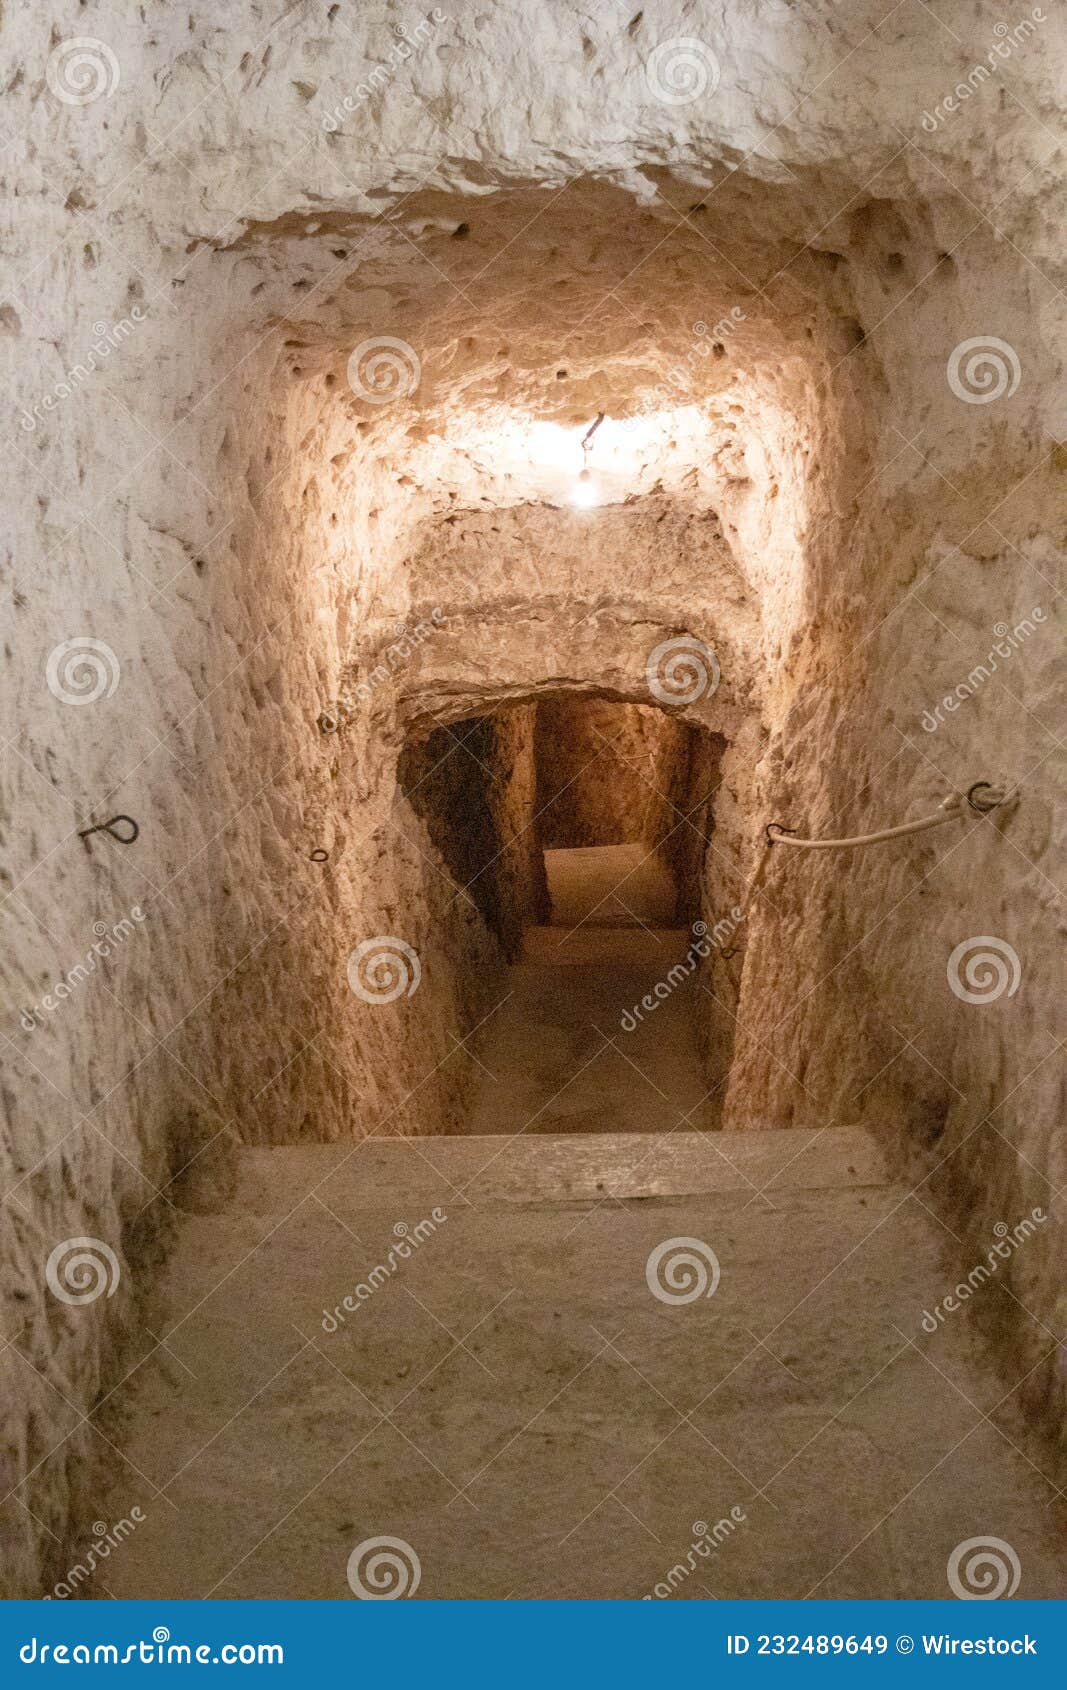 vertical shot of a man-made cave in alcana del jucar, castilia la mancha, spain